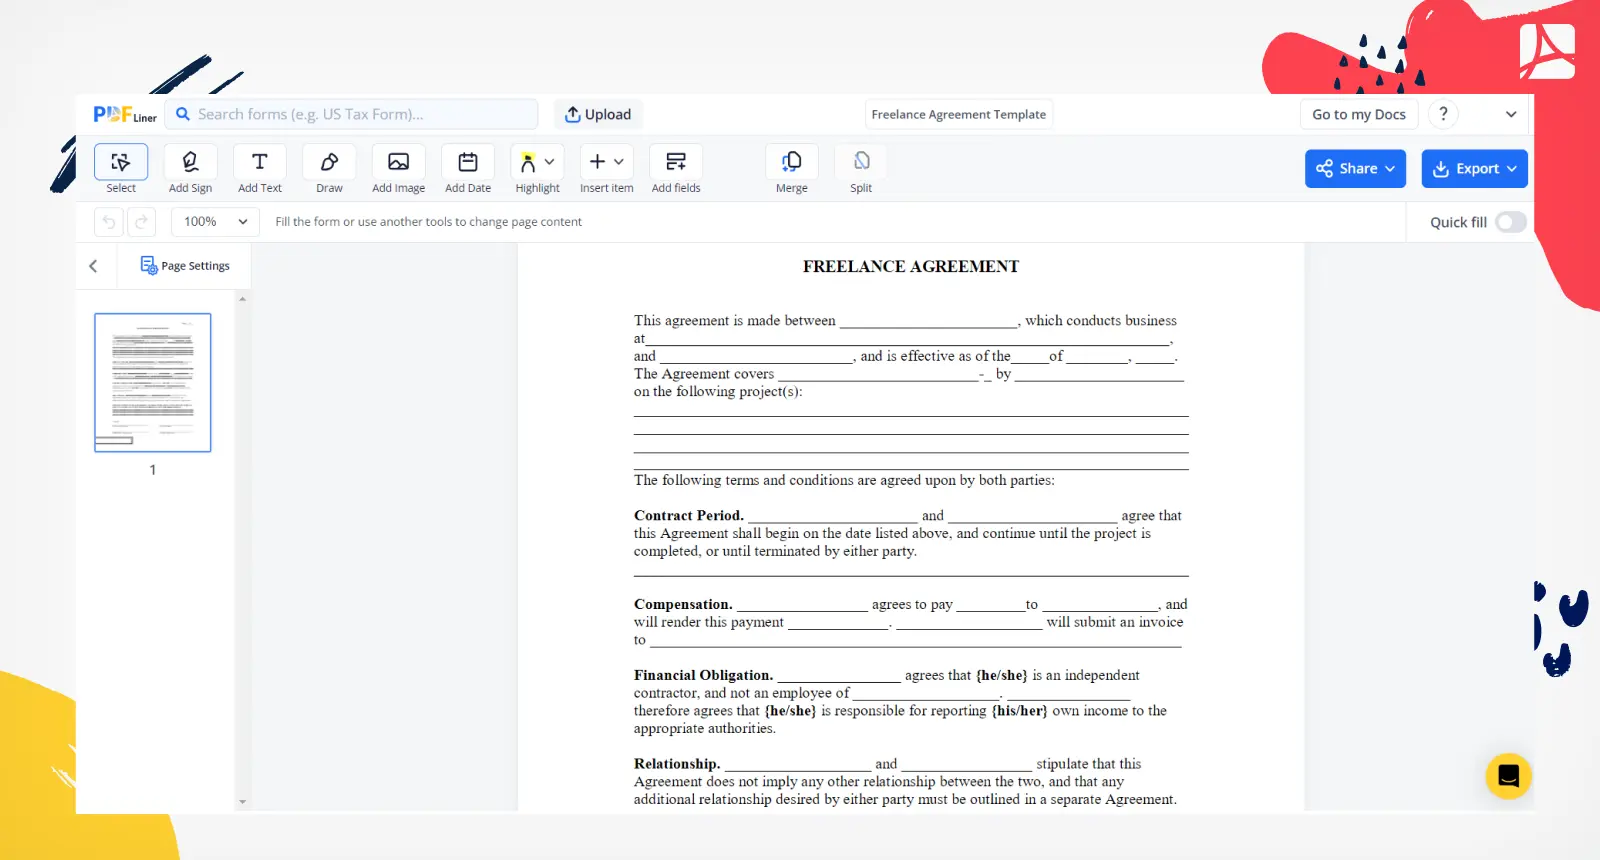 Freelance Agreement Template Screenshot